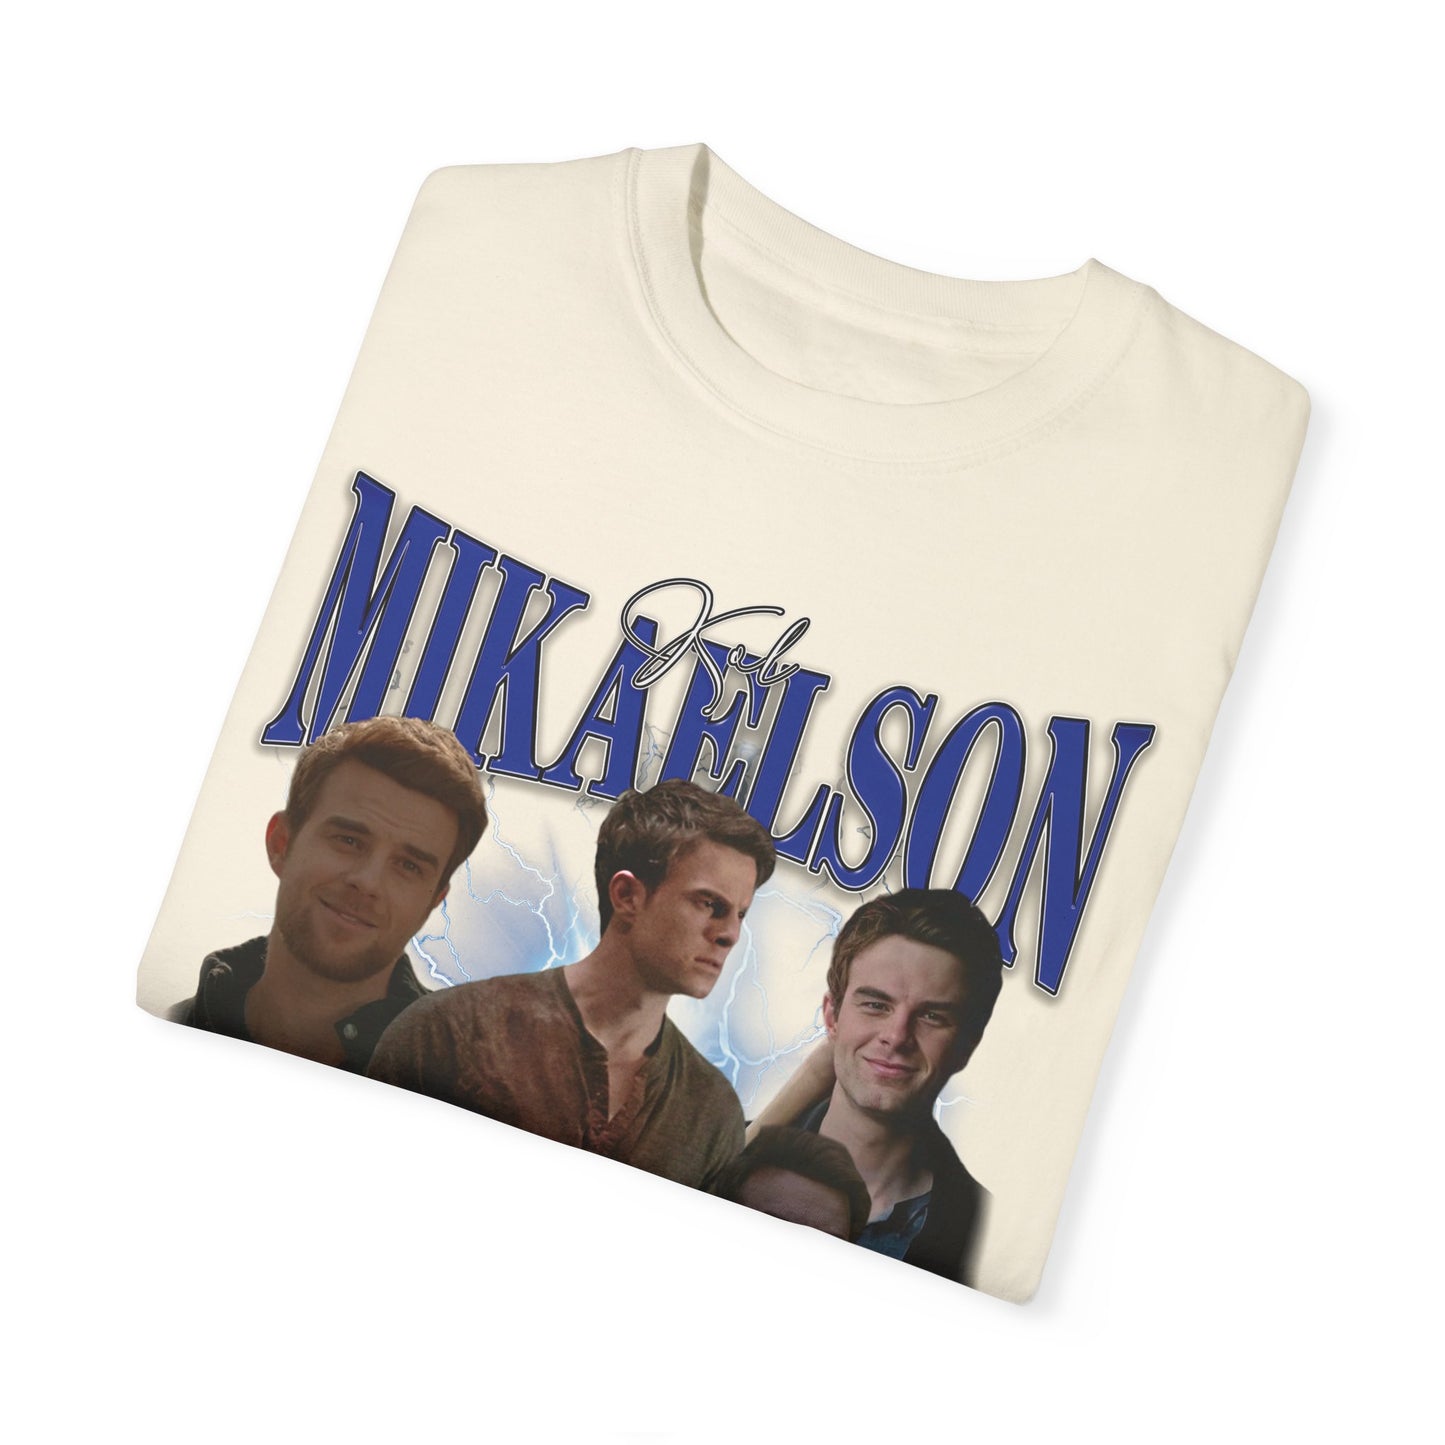 Kol Mikaelson 90s Tshirt